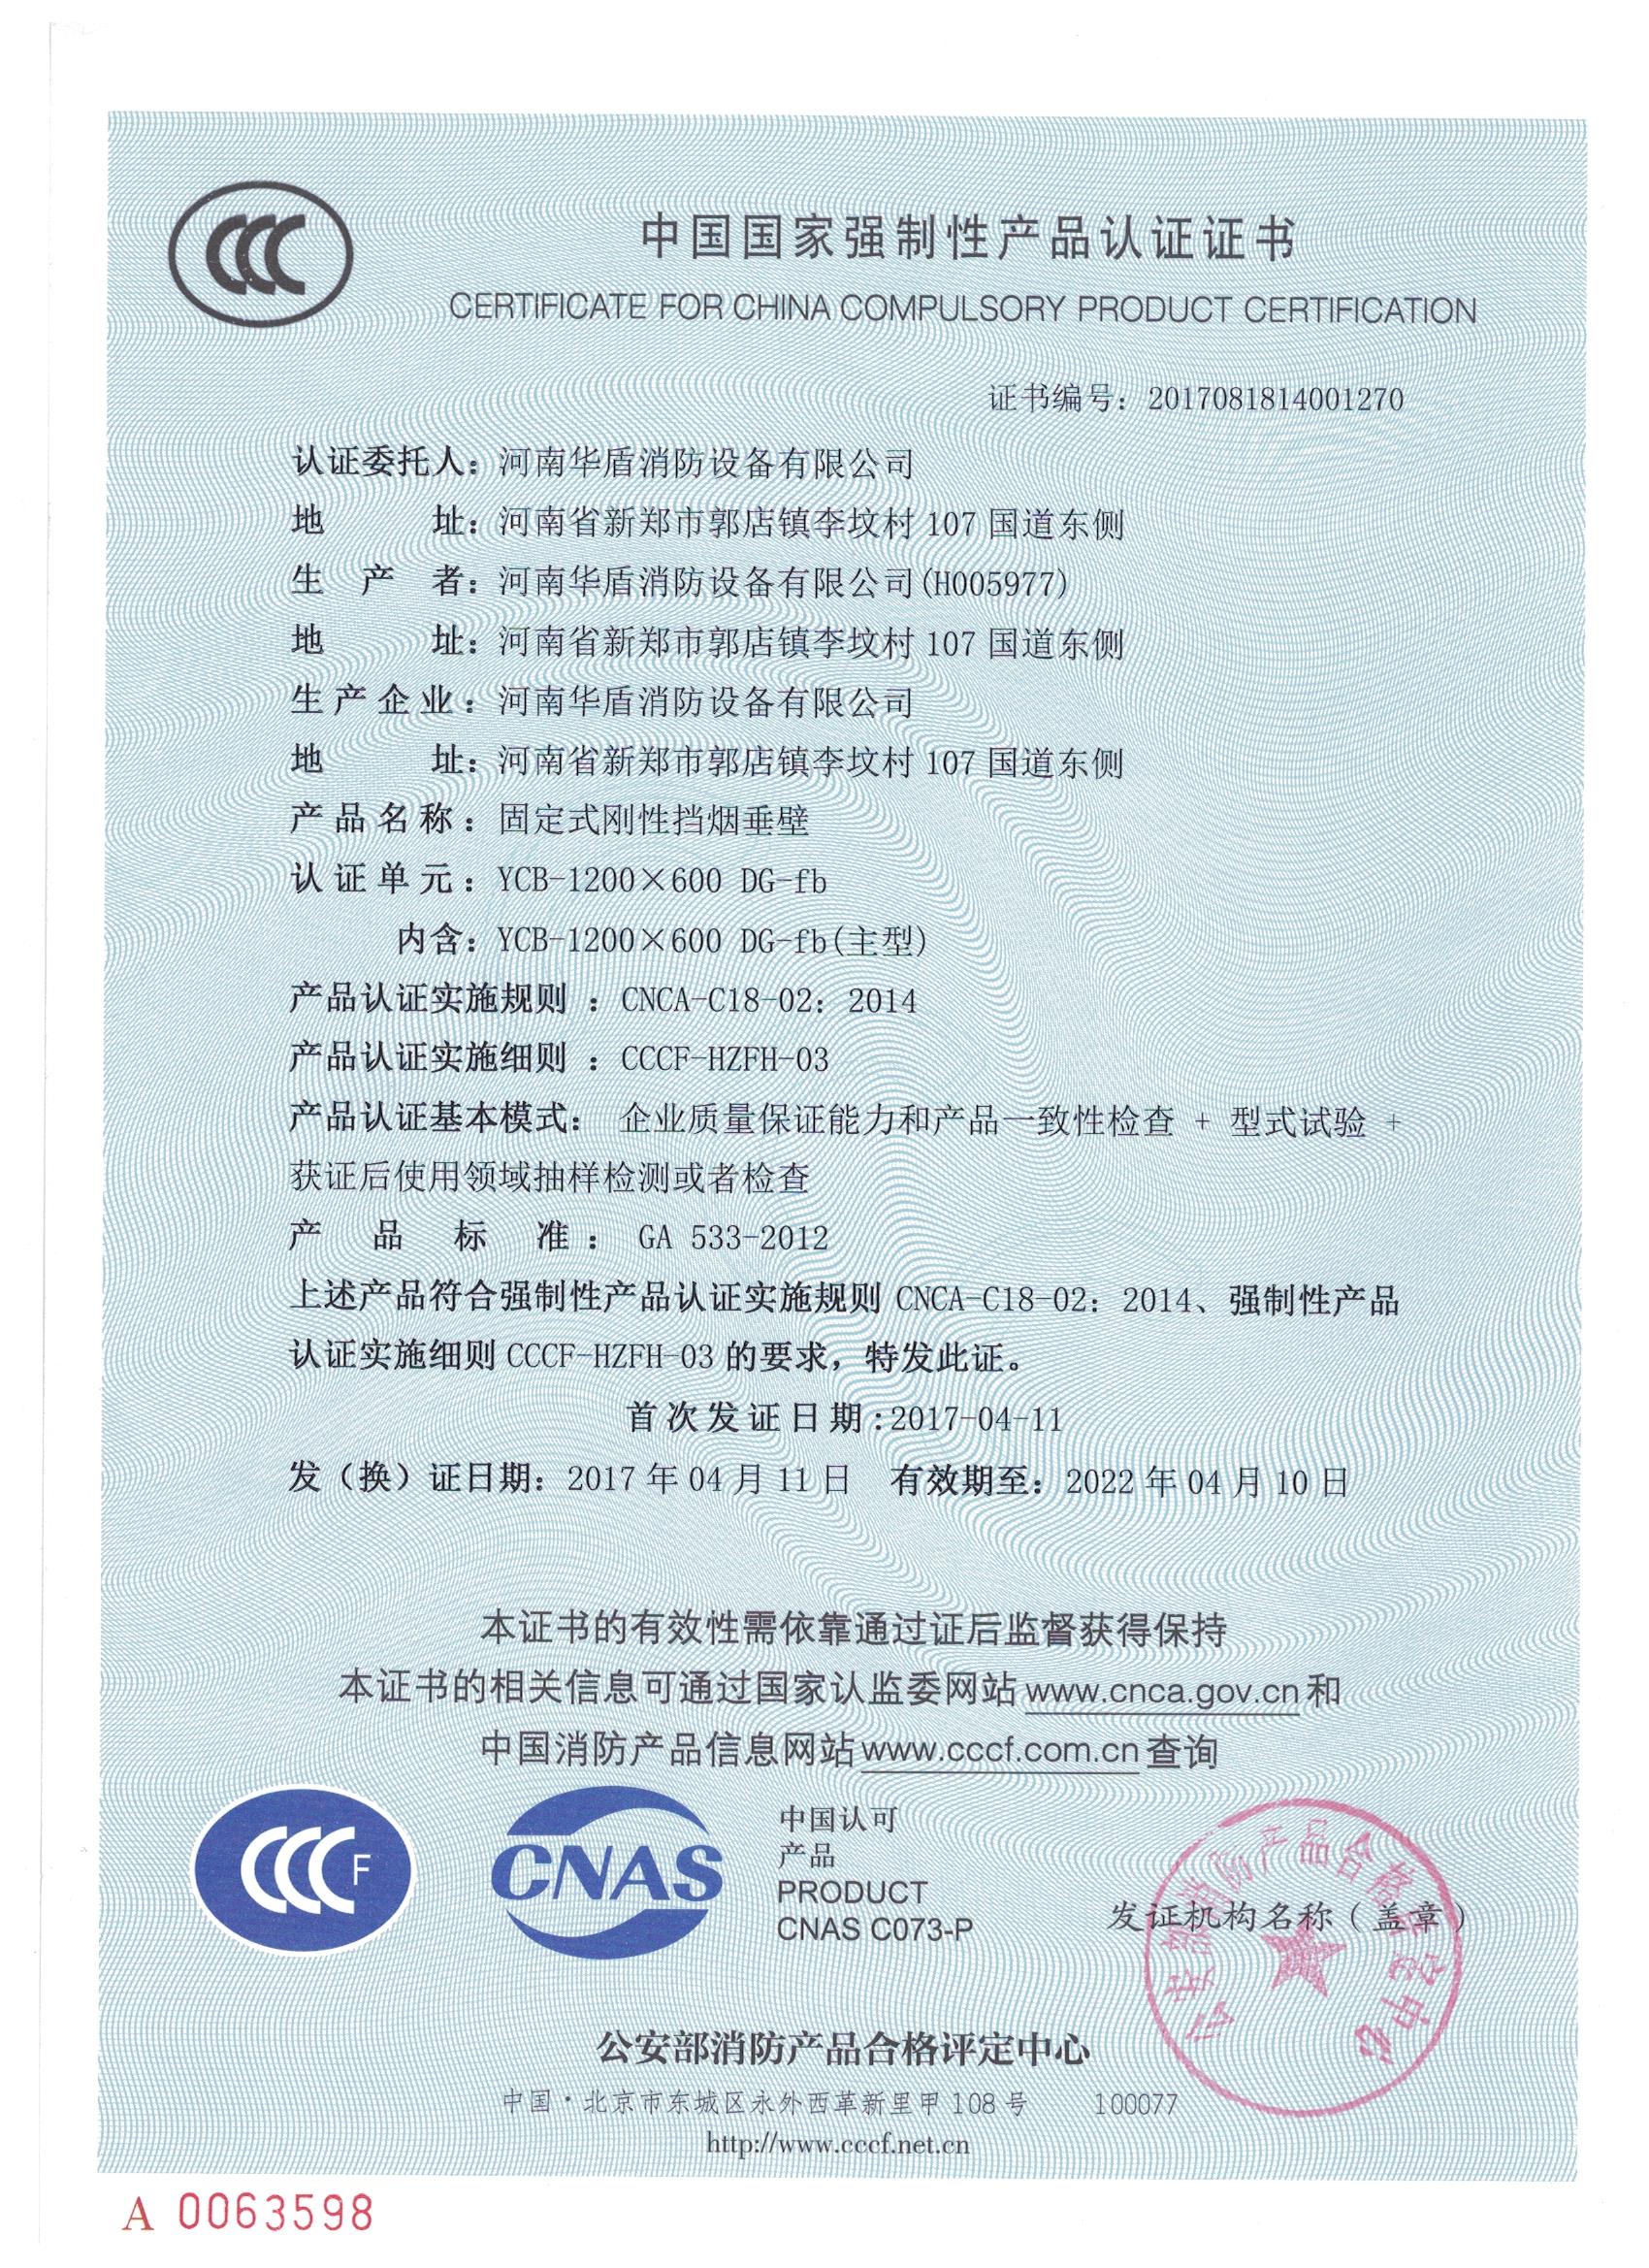 YCB-1000X600 DG-fd-3C证书/检验报告